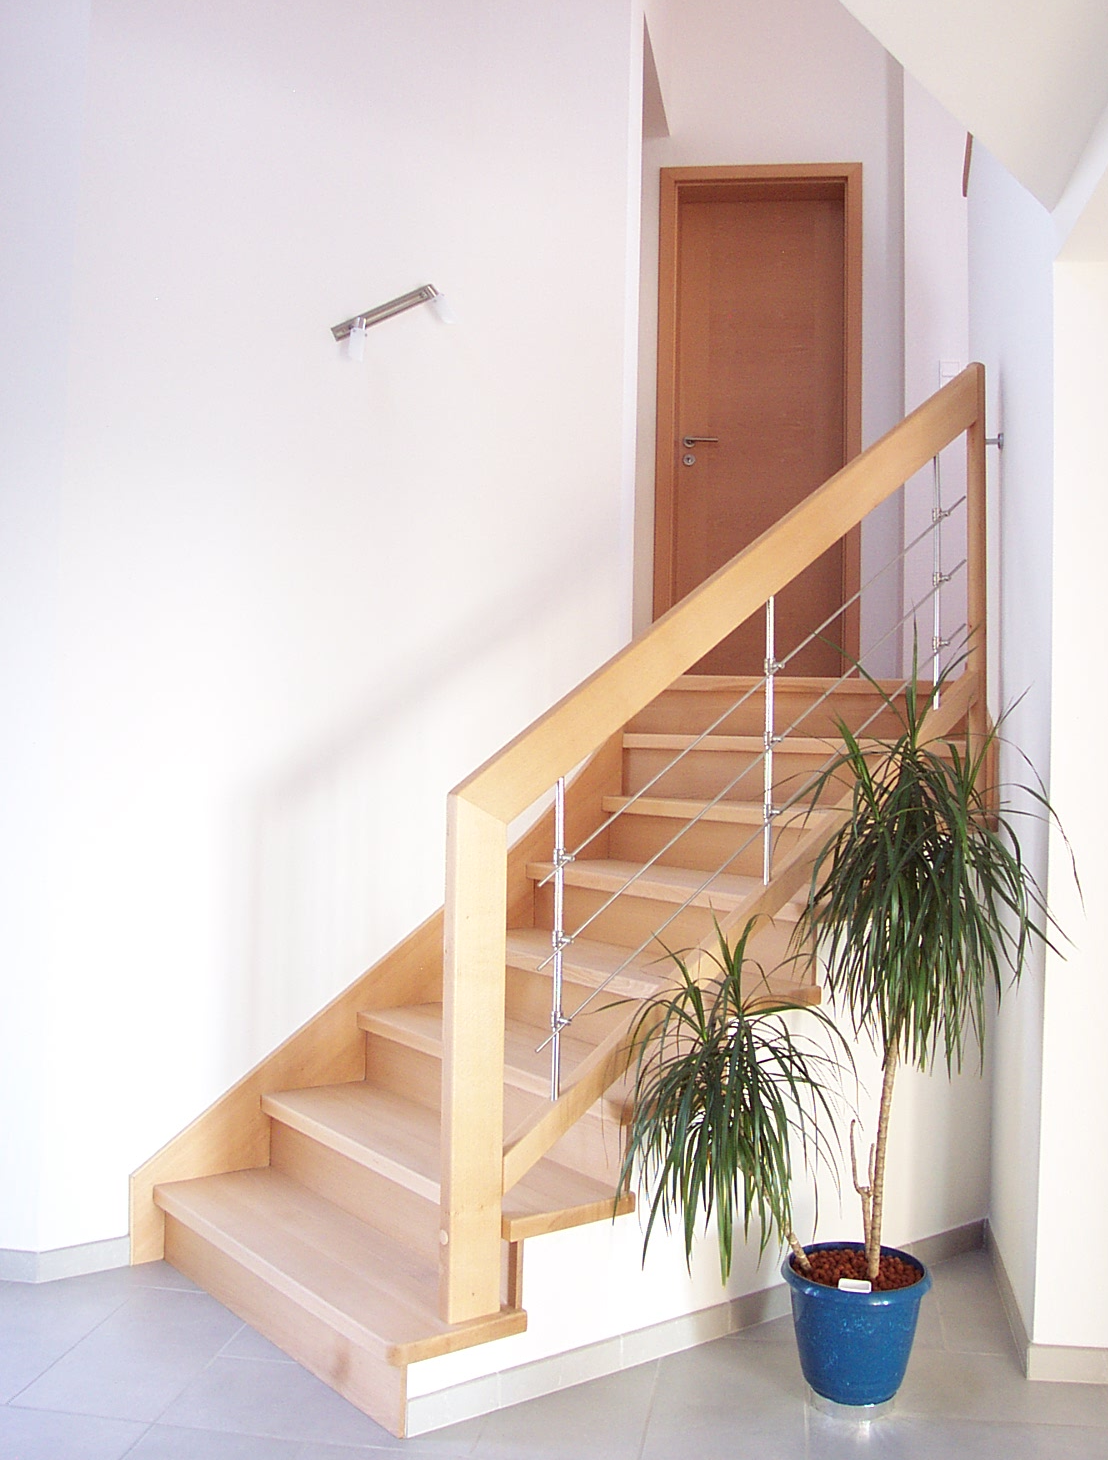 Habillage de marches et contremarches en hêtre massif sur escalier béton. Rampe en bois avec remplissage avec balustres et lisses inox sur liens.